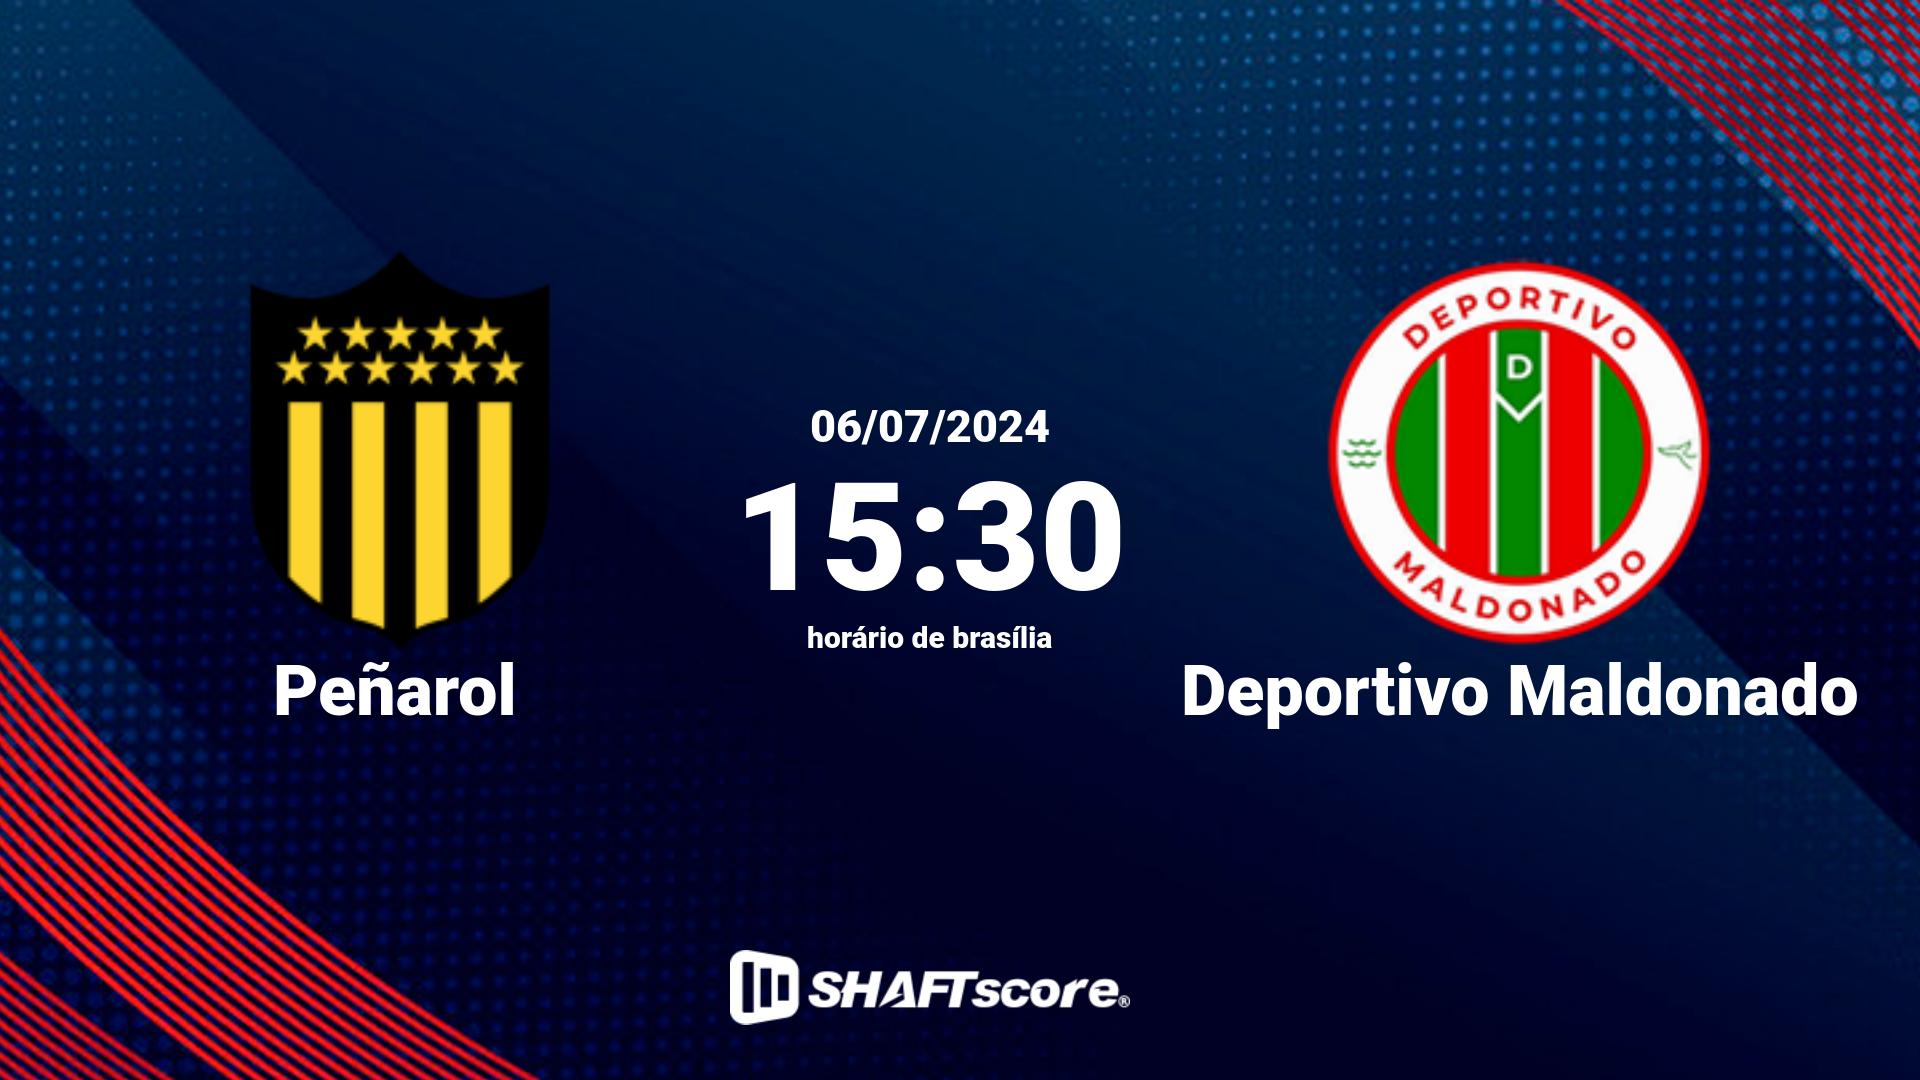 Estatísticas do jogo Peñarol vs Deportivo Maldonado 06.07 15:30